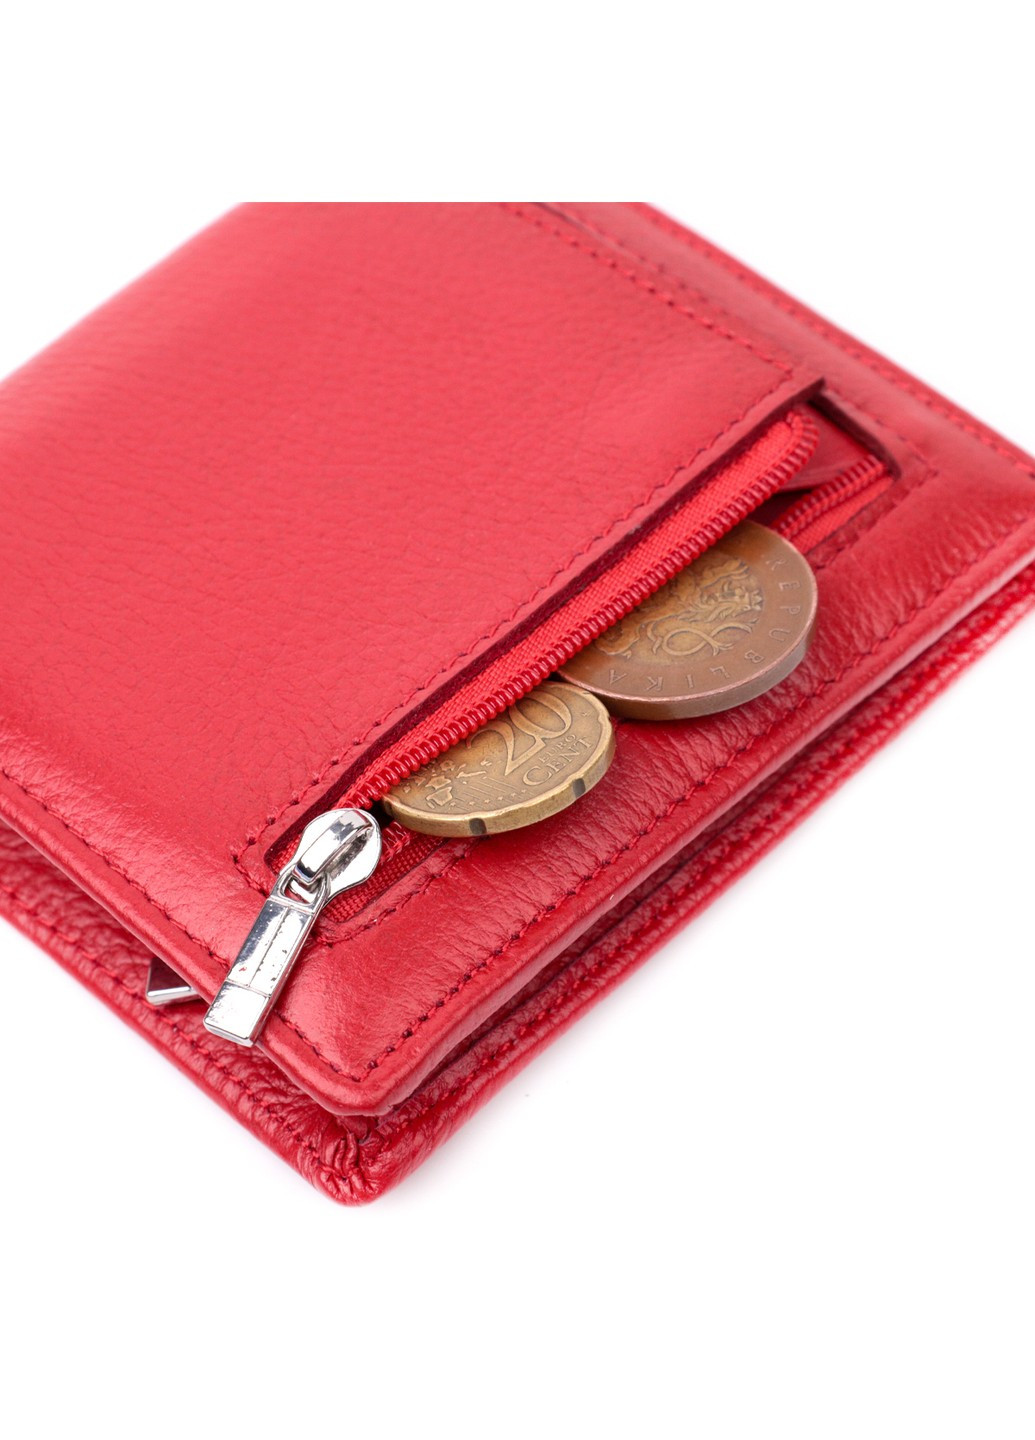 Яркий женский кошелек из натуральной кожи 19465 Красный st leather (277980559)